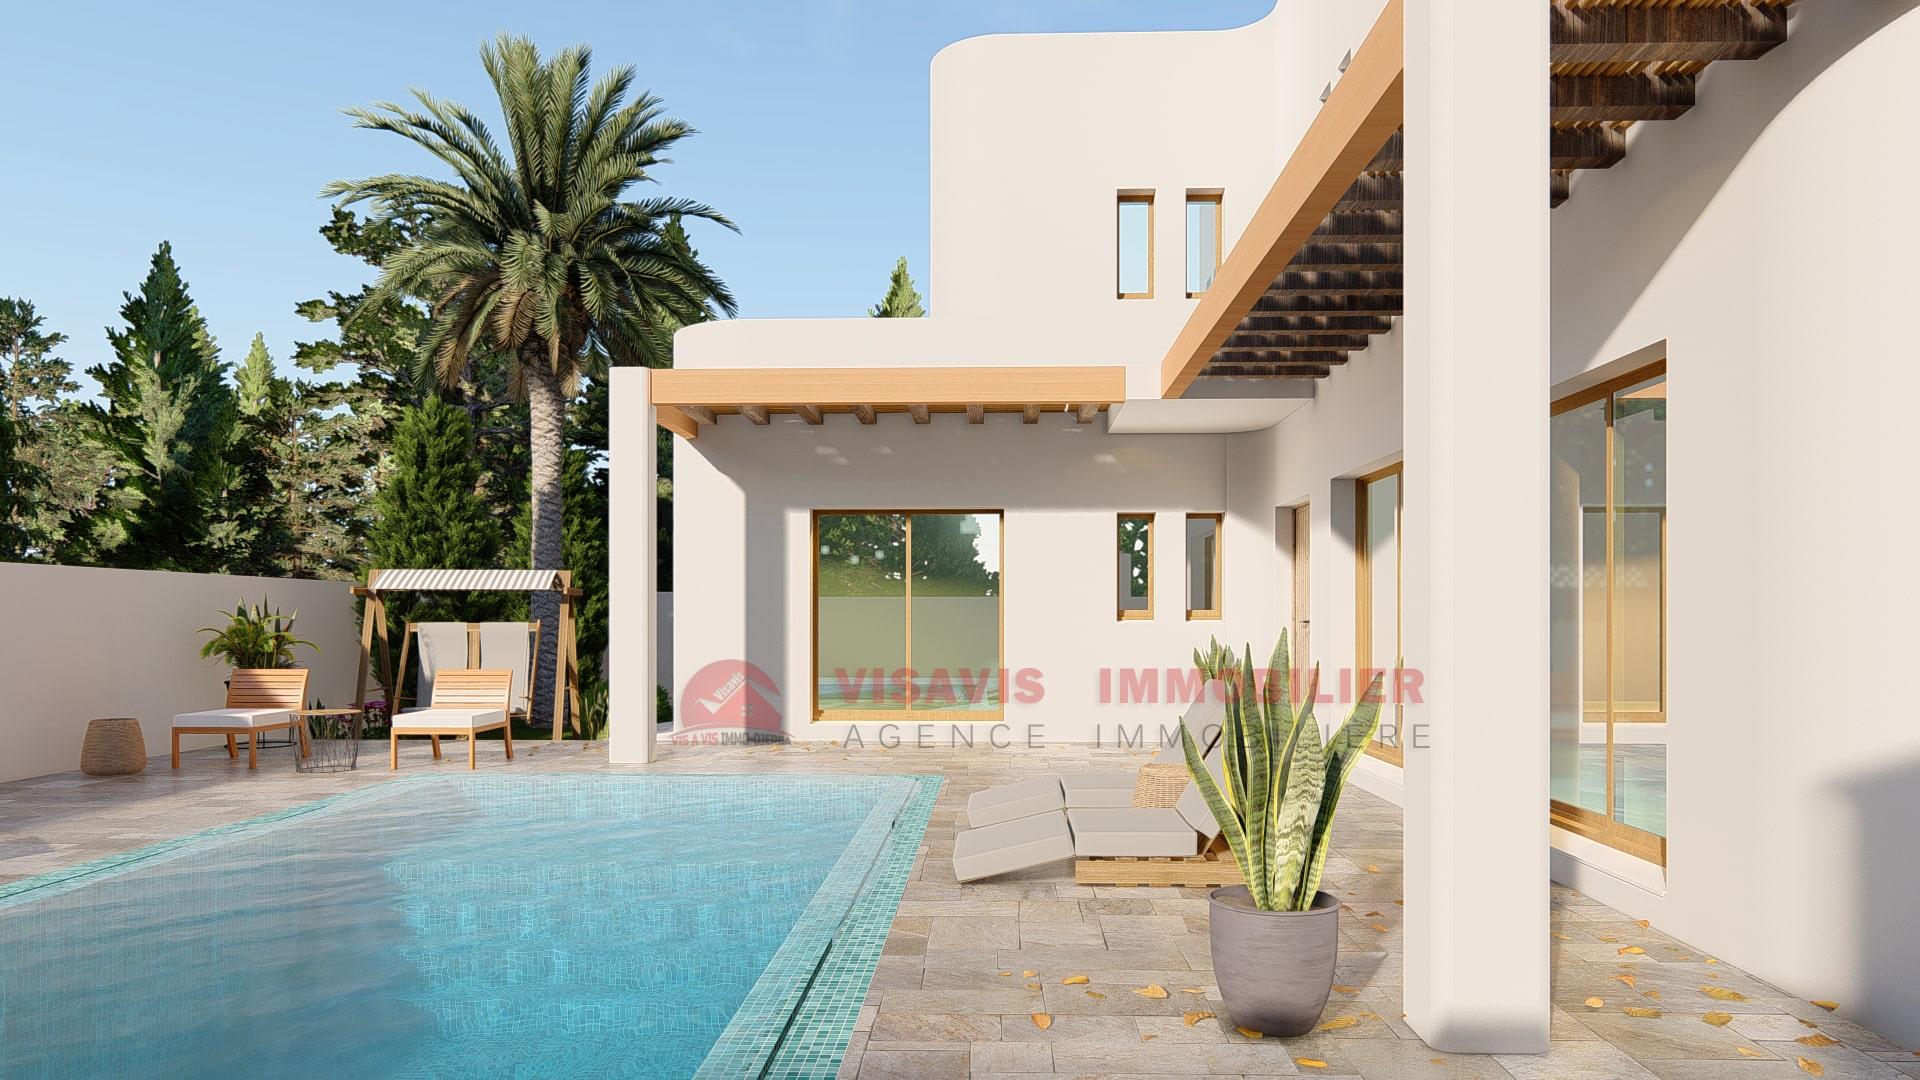 Nuova villa in vendita a Djerba - zona urbana - titolo blu